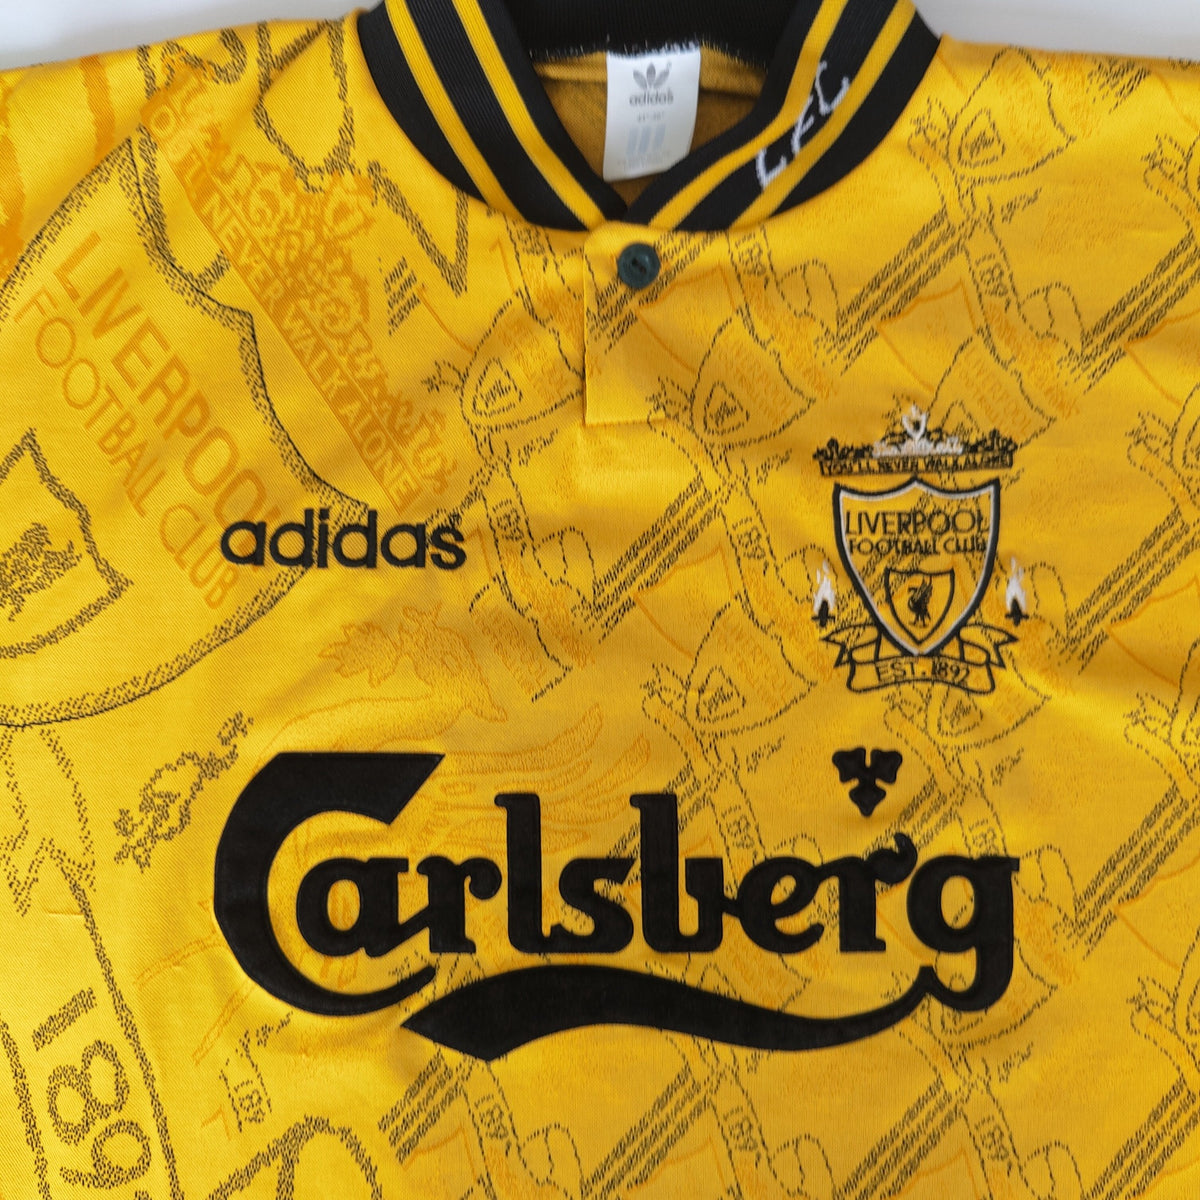 1994 yellow Adidas Sweden template long-sleeve shirt, retroiscooler